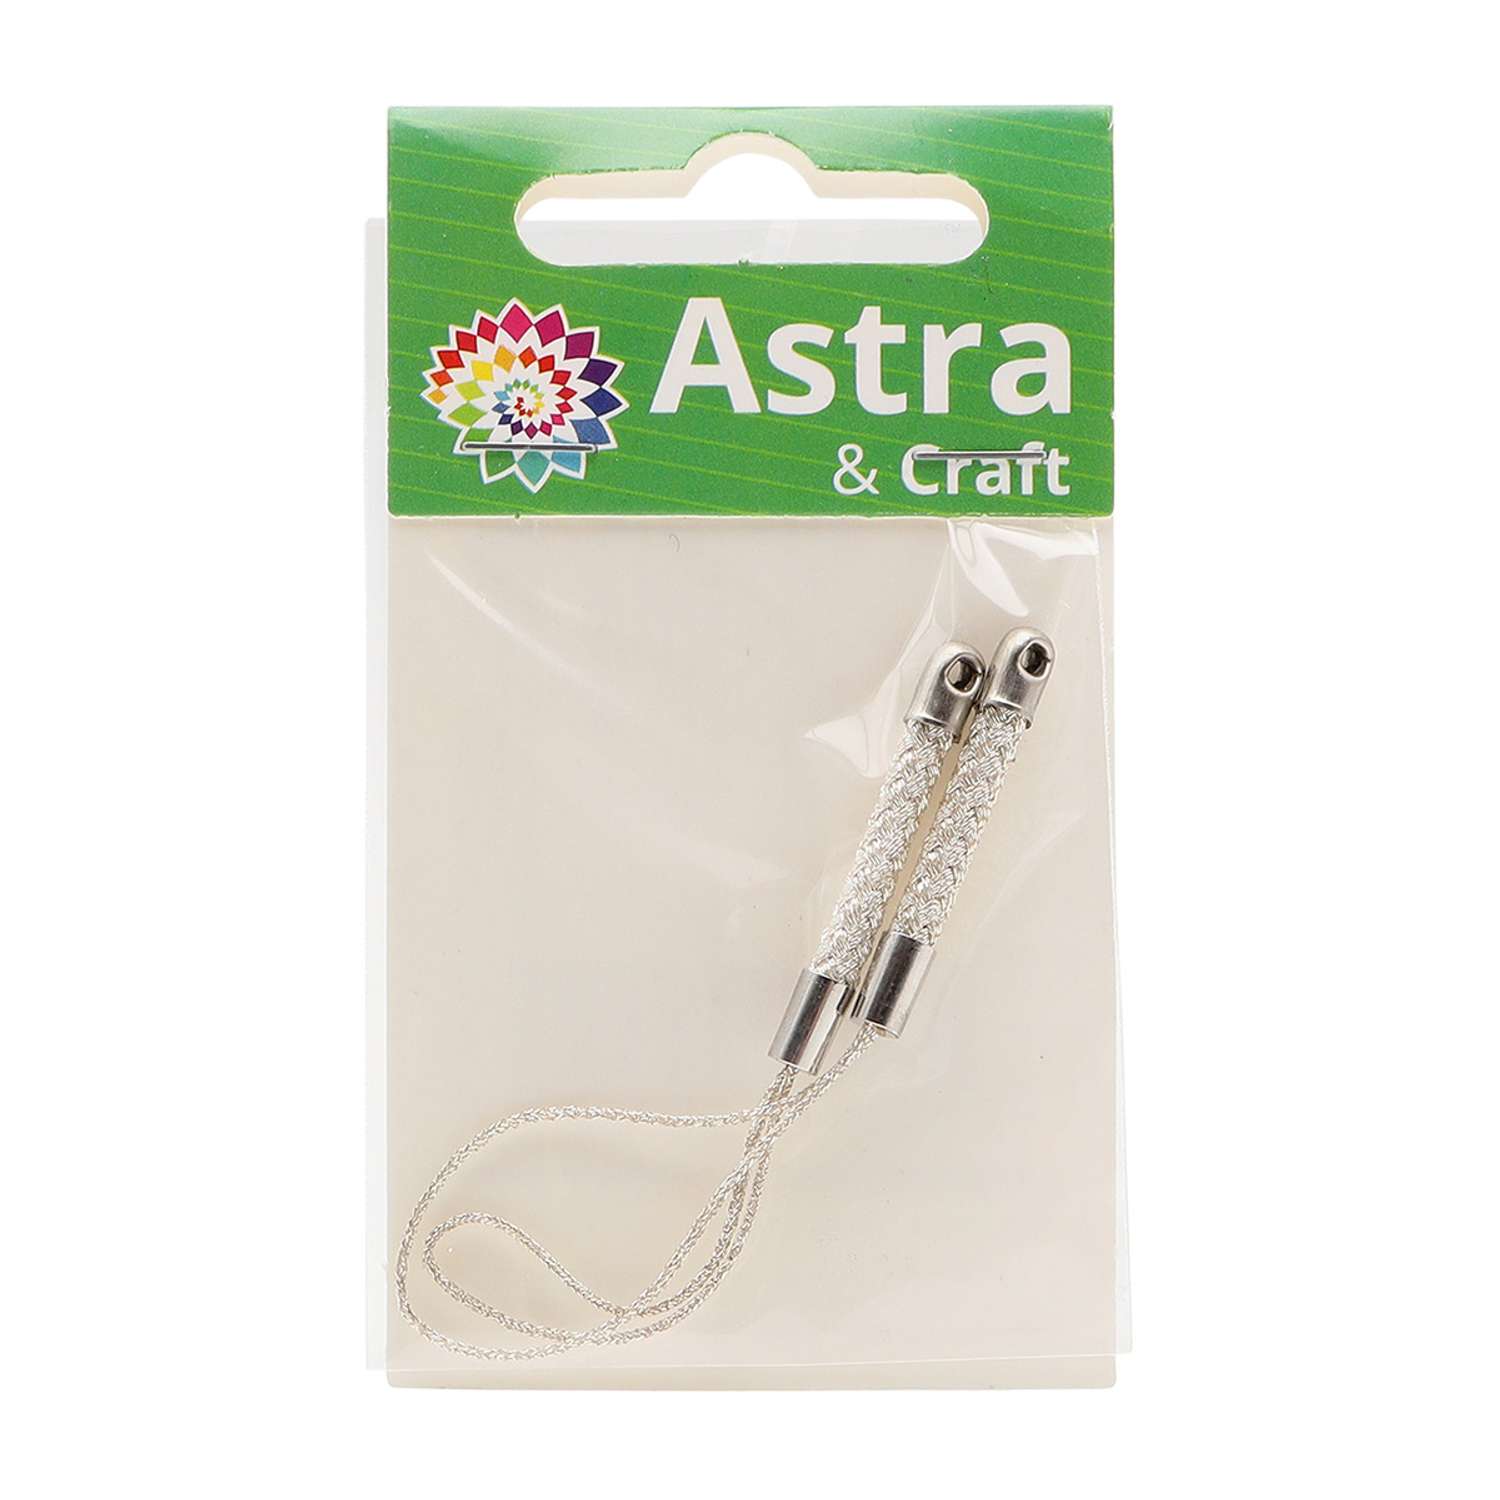 Шнур Astra Craft металлизированный прочный для брелков и изготовления украшений 2 шт серебристый - фото 3